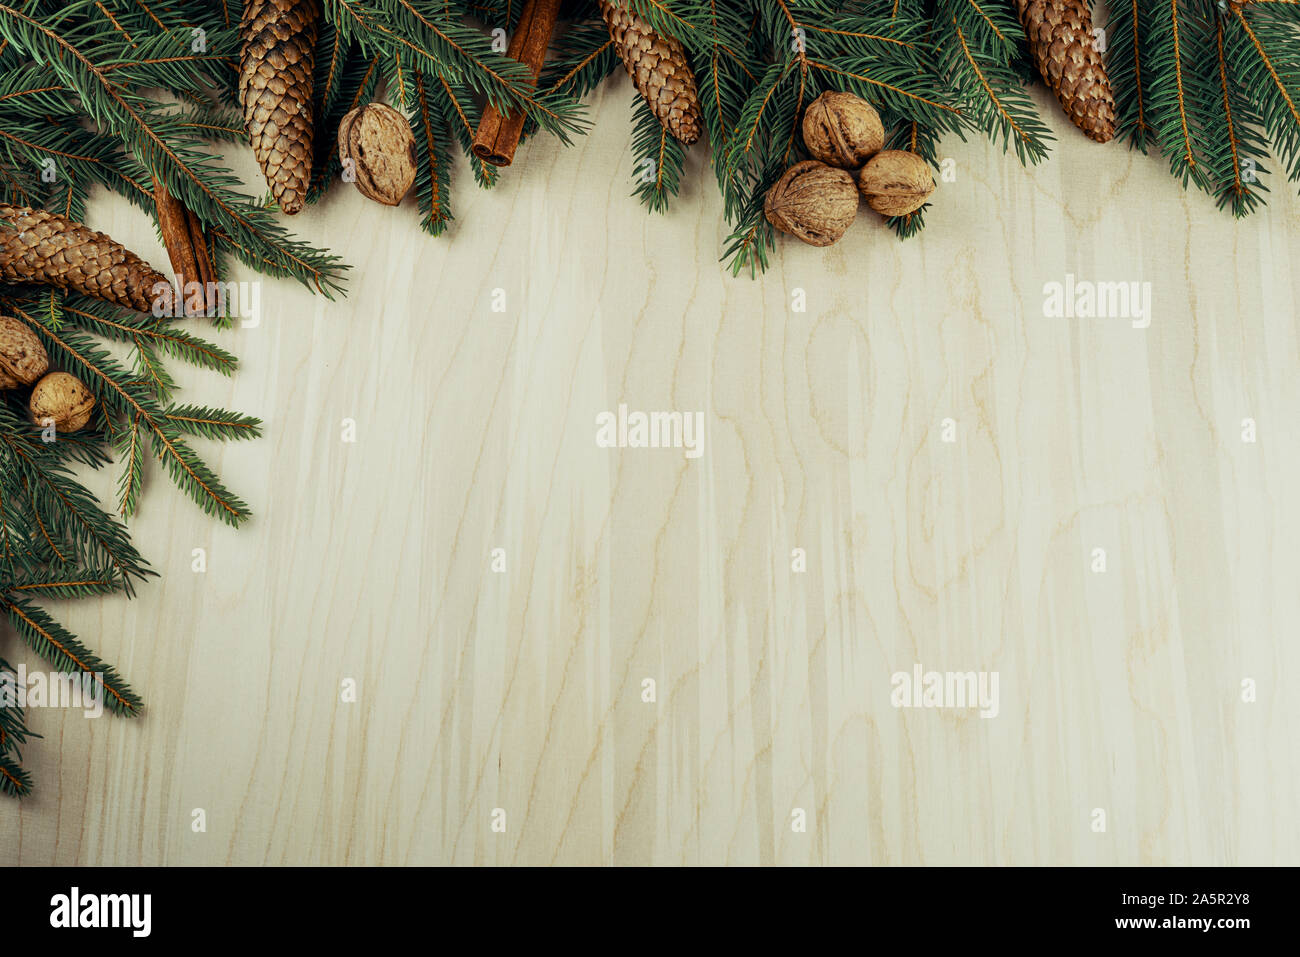 Weihnachten Rahmen mit Zweigen, Zapfen, Nüssen und Zimt auf Holz- Hintergrund gemacht Stockfoto